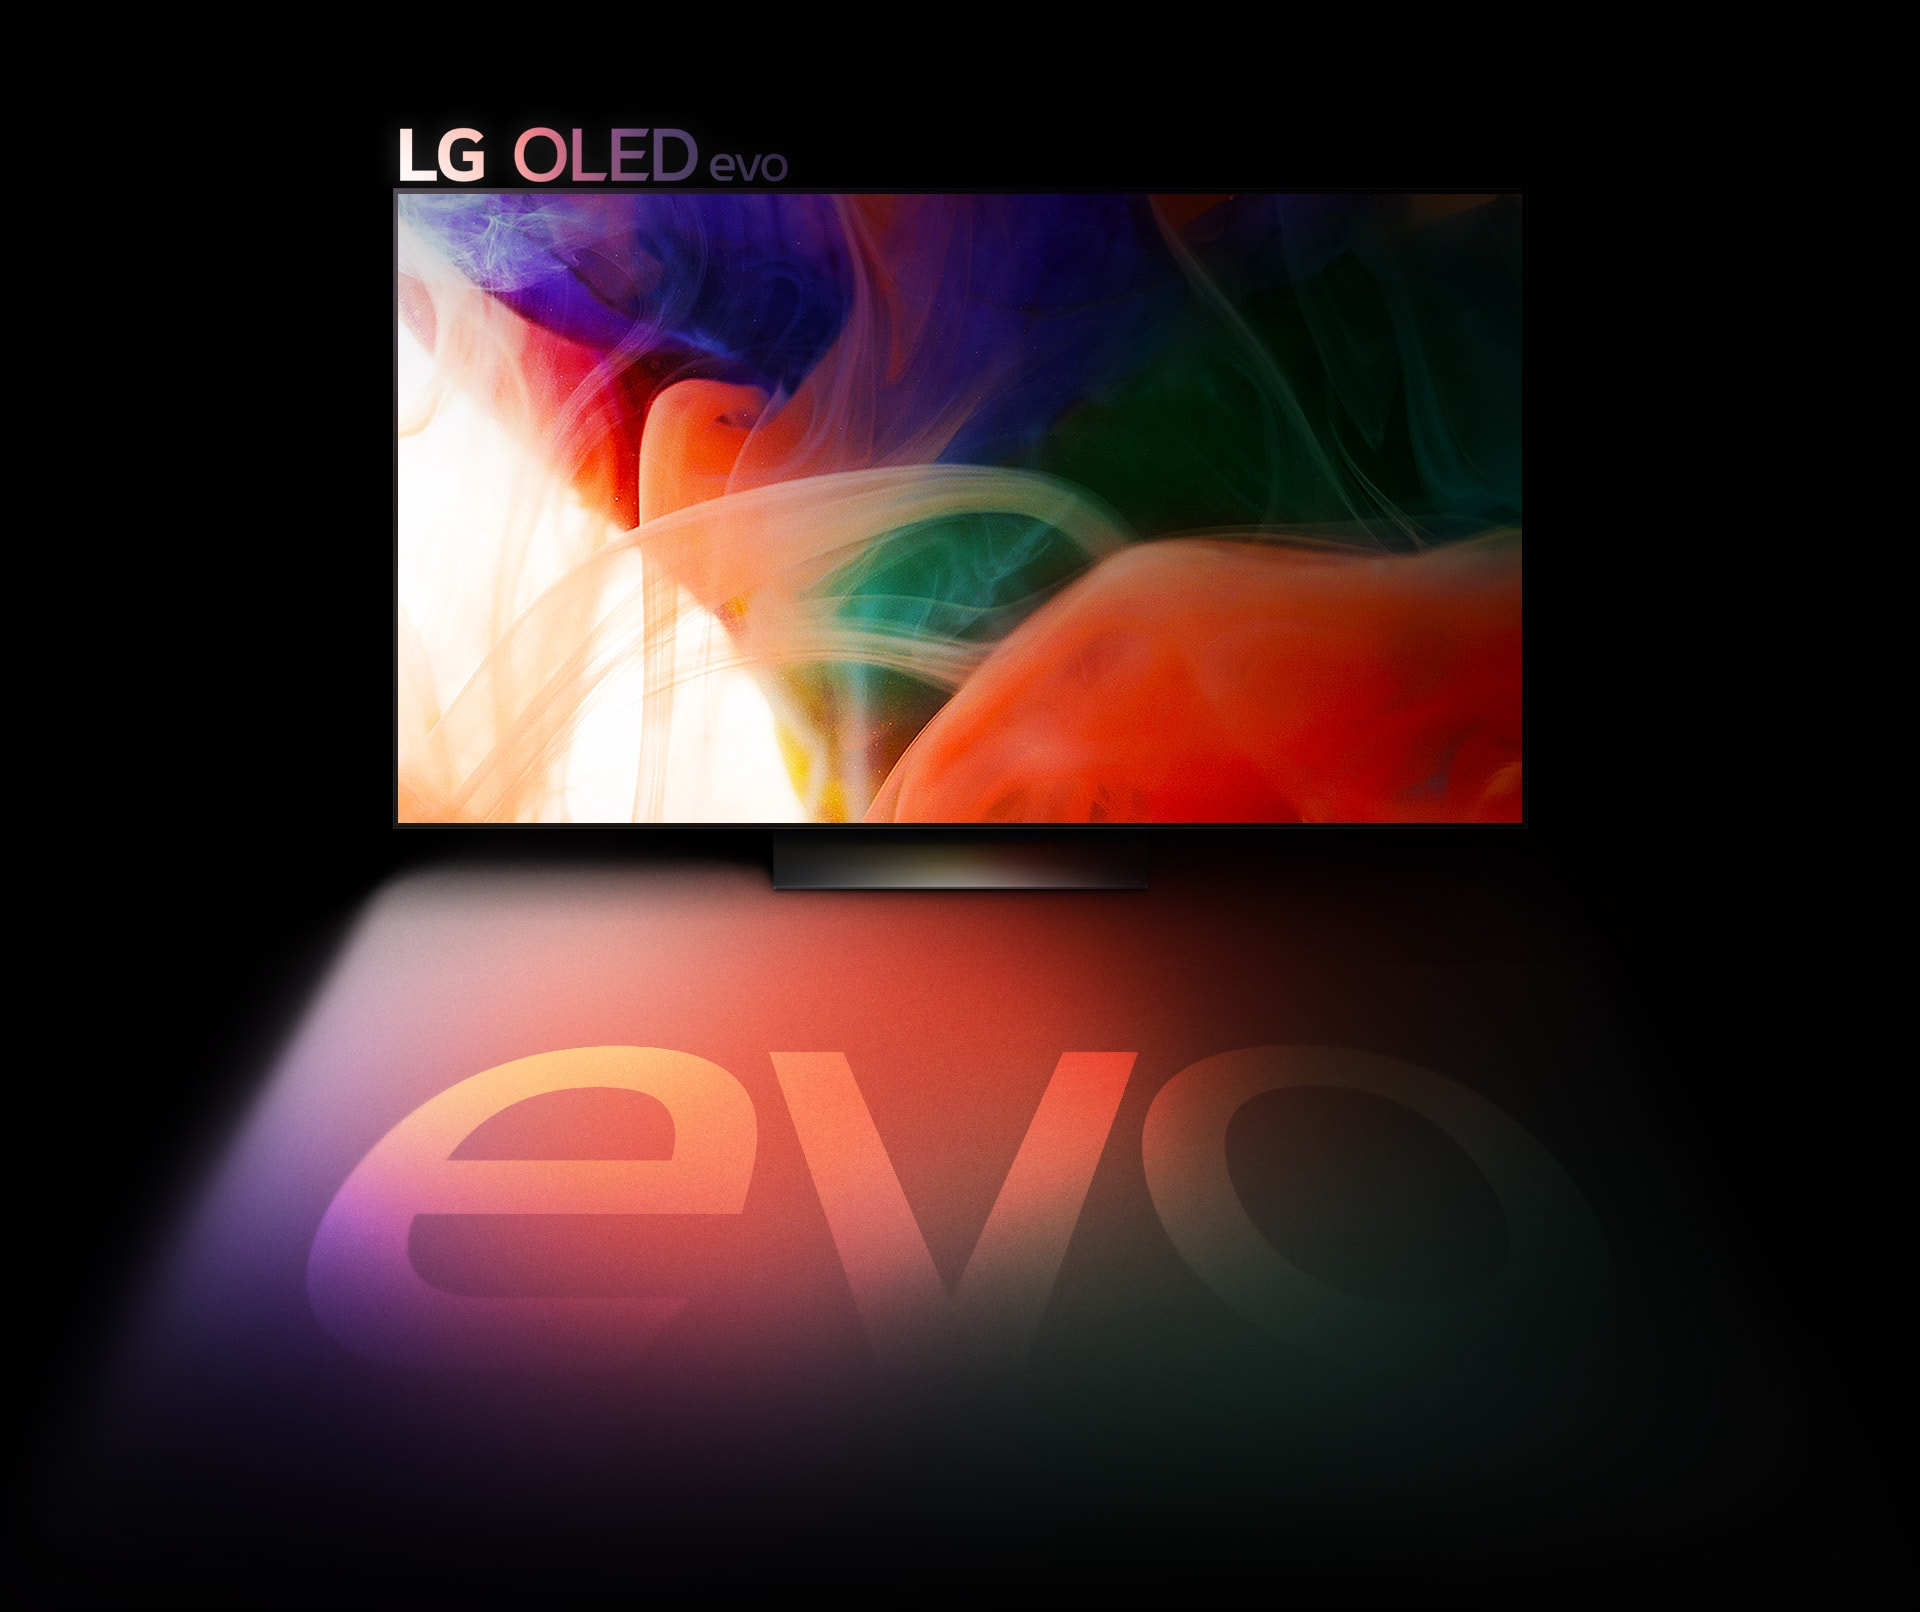 Une image abstraite et colorée s’affiche sur un téléviseur LG OLED evo.